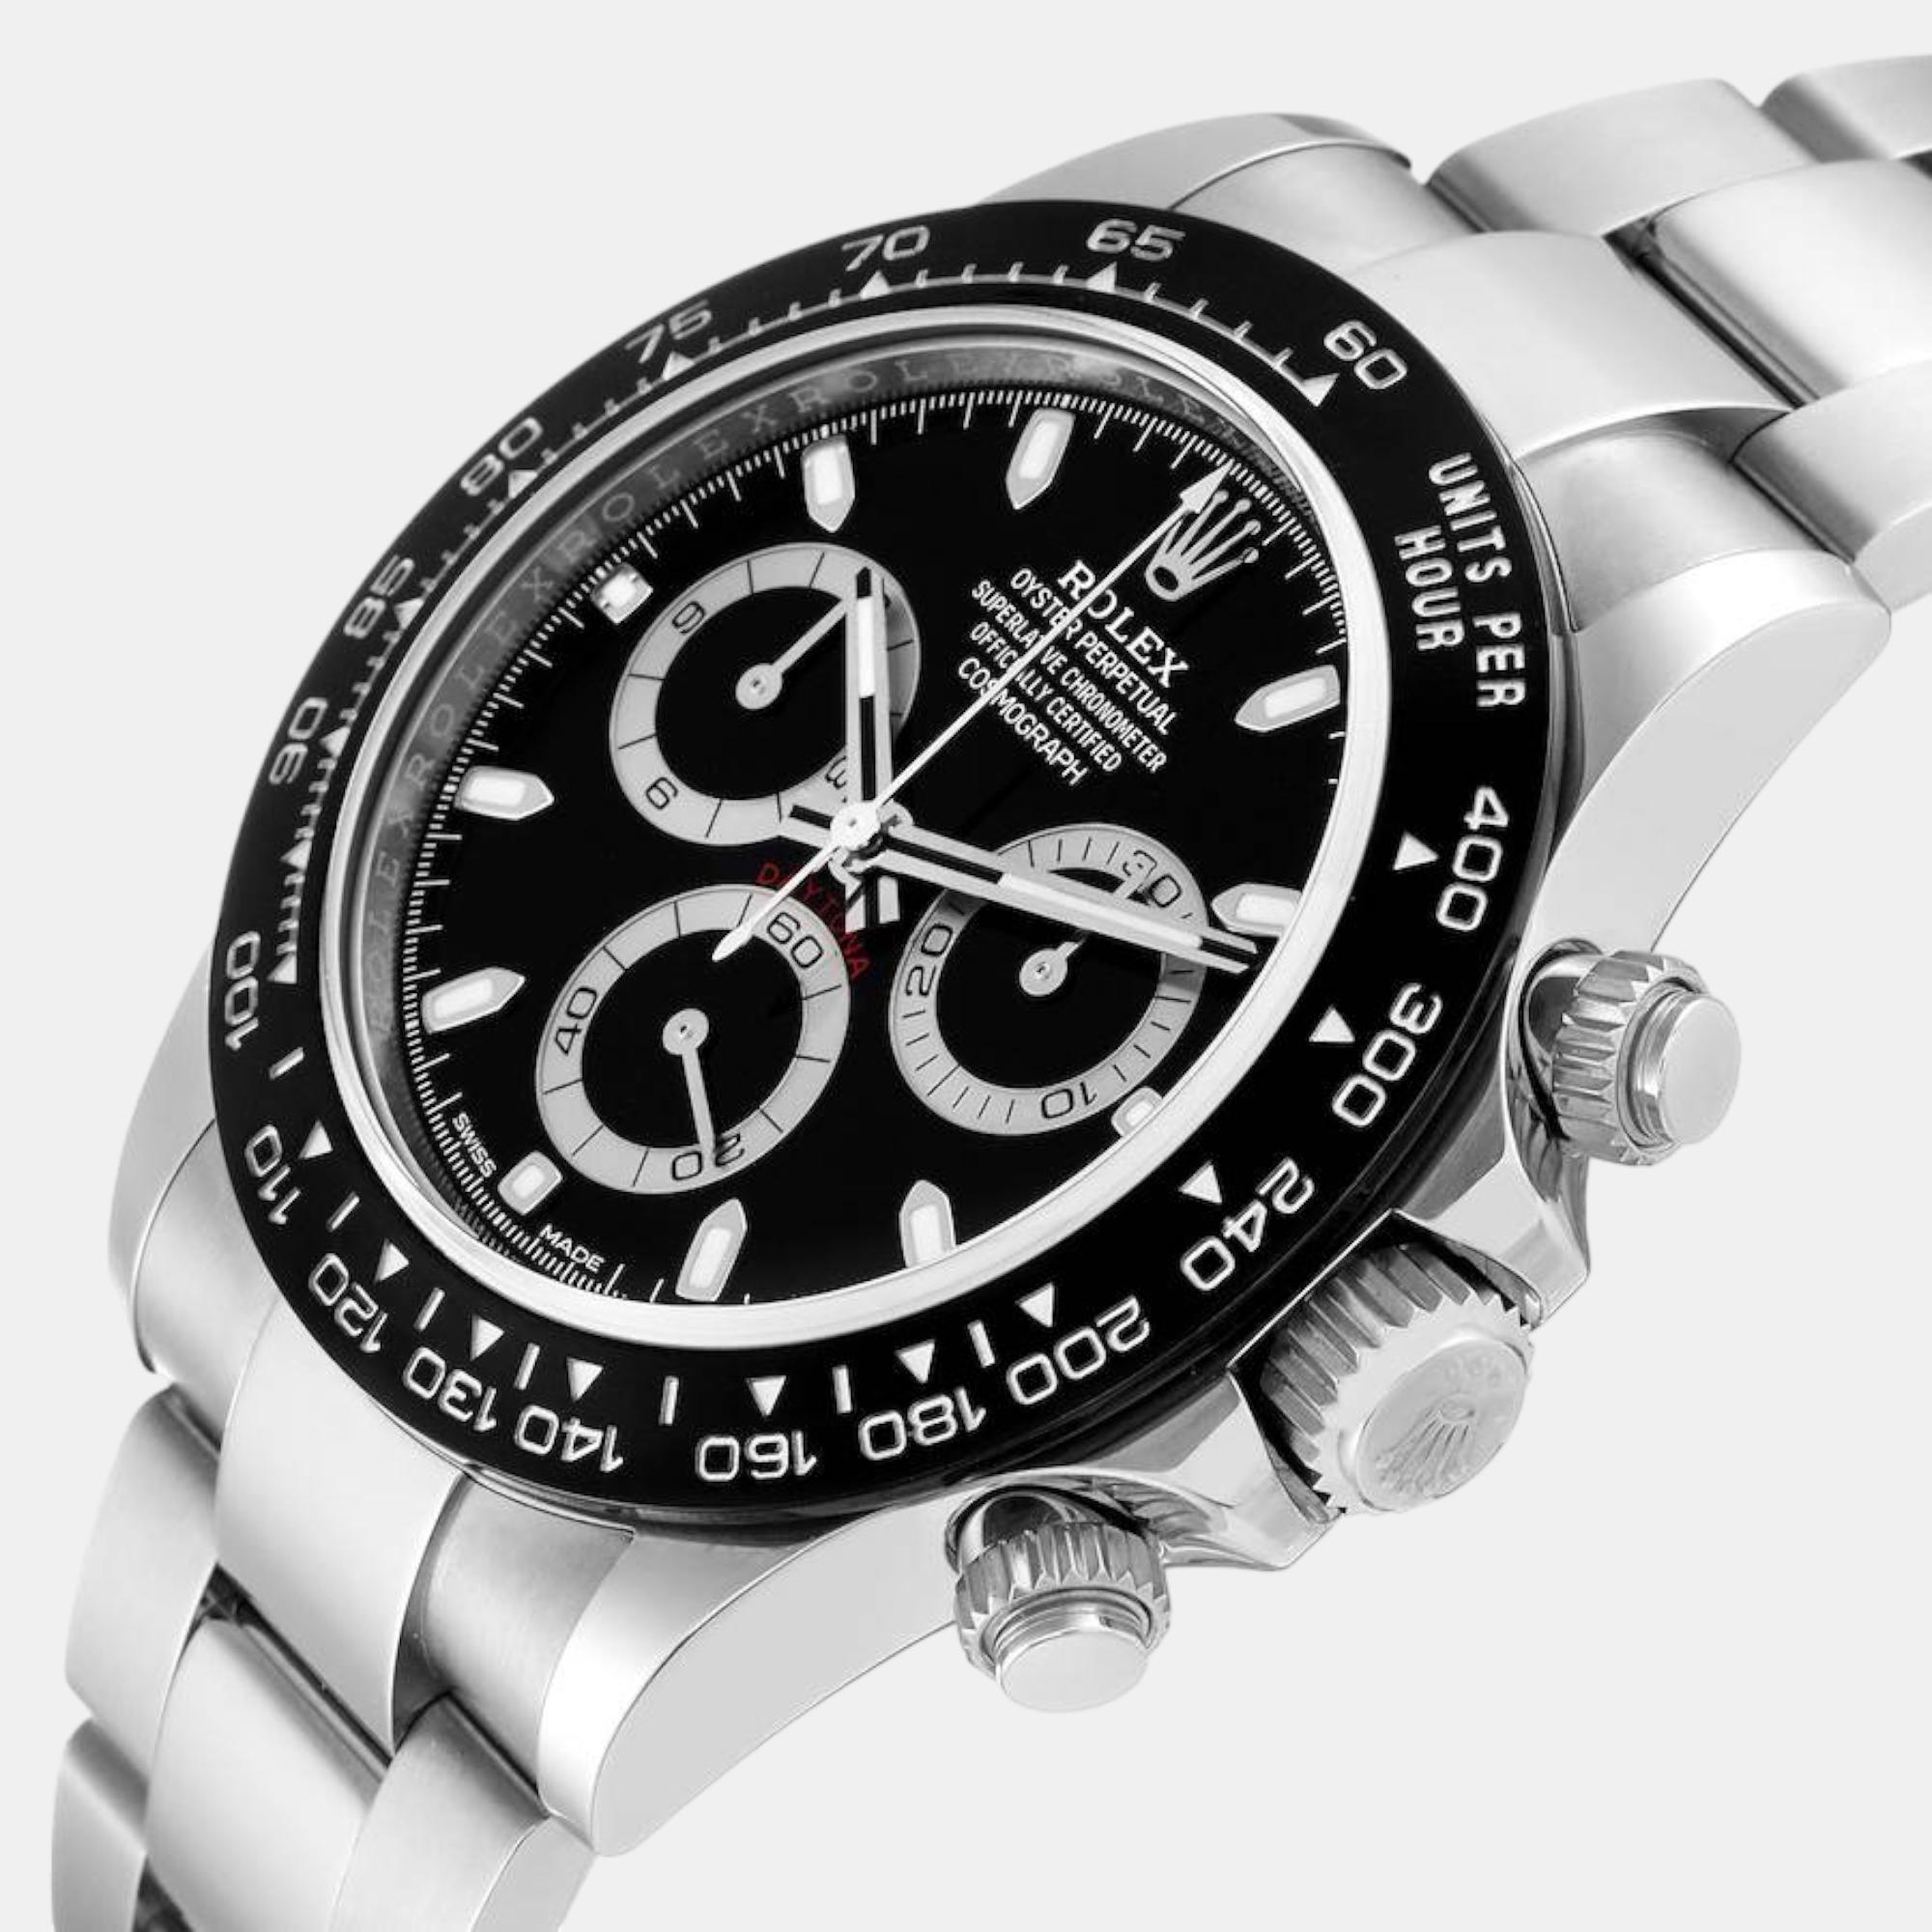 

Rolex Cosmograph Daytona Ceramic Bezel Black Dial Steel Mens Watch 116500 Unworn 40 mm